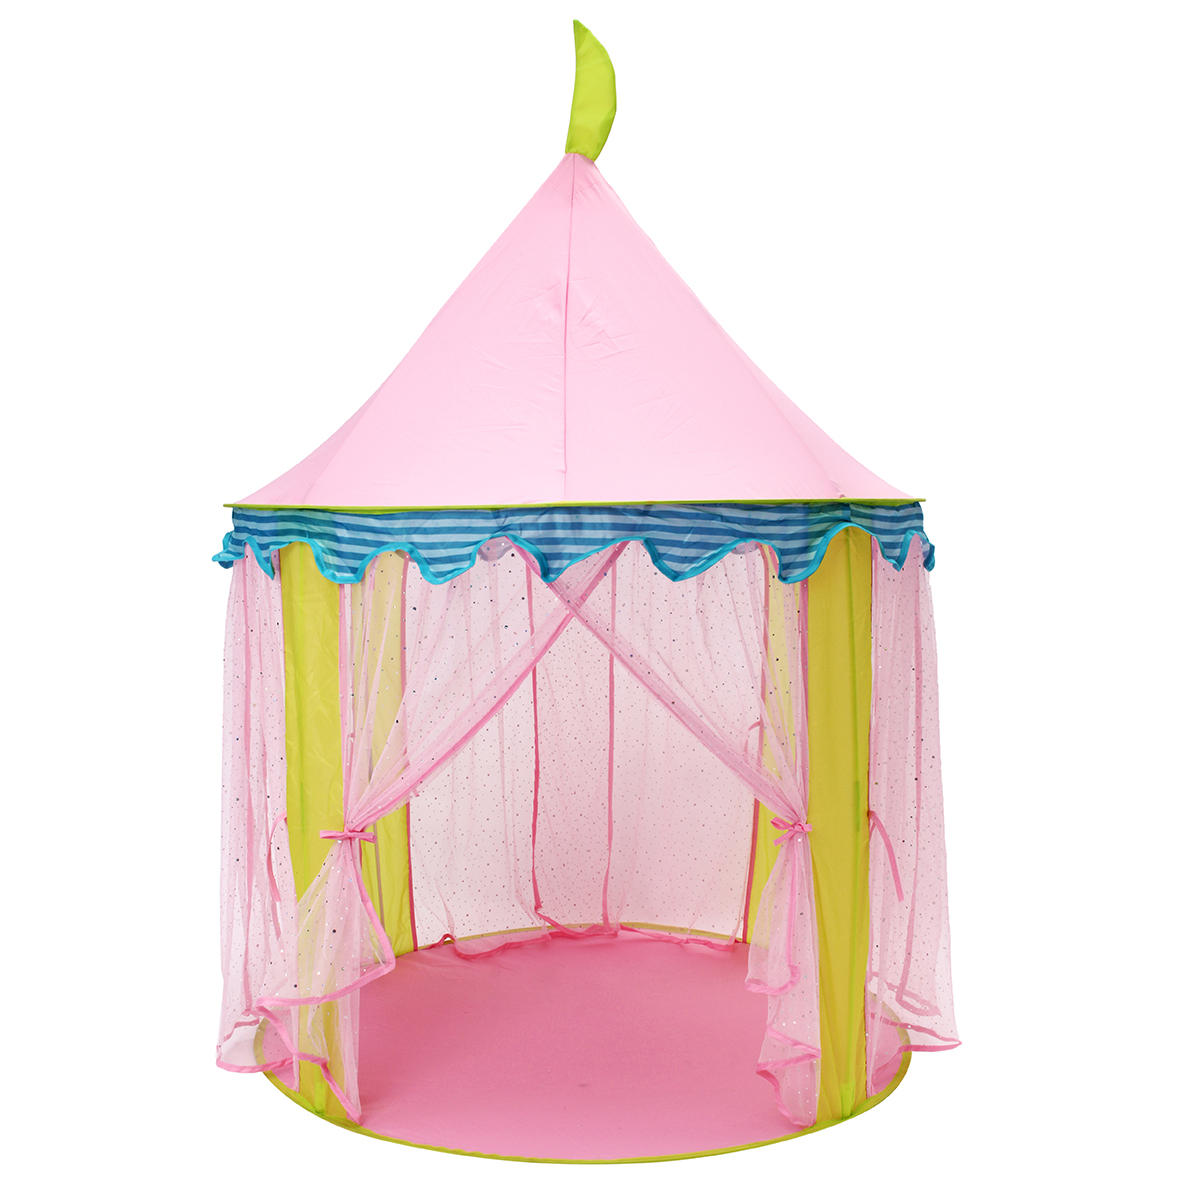 Védhető gyerekek rózsaszínű hercegnő sátor összecsukható gyermekjáték gyerekeknek szúnyog nagy játékterem